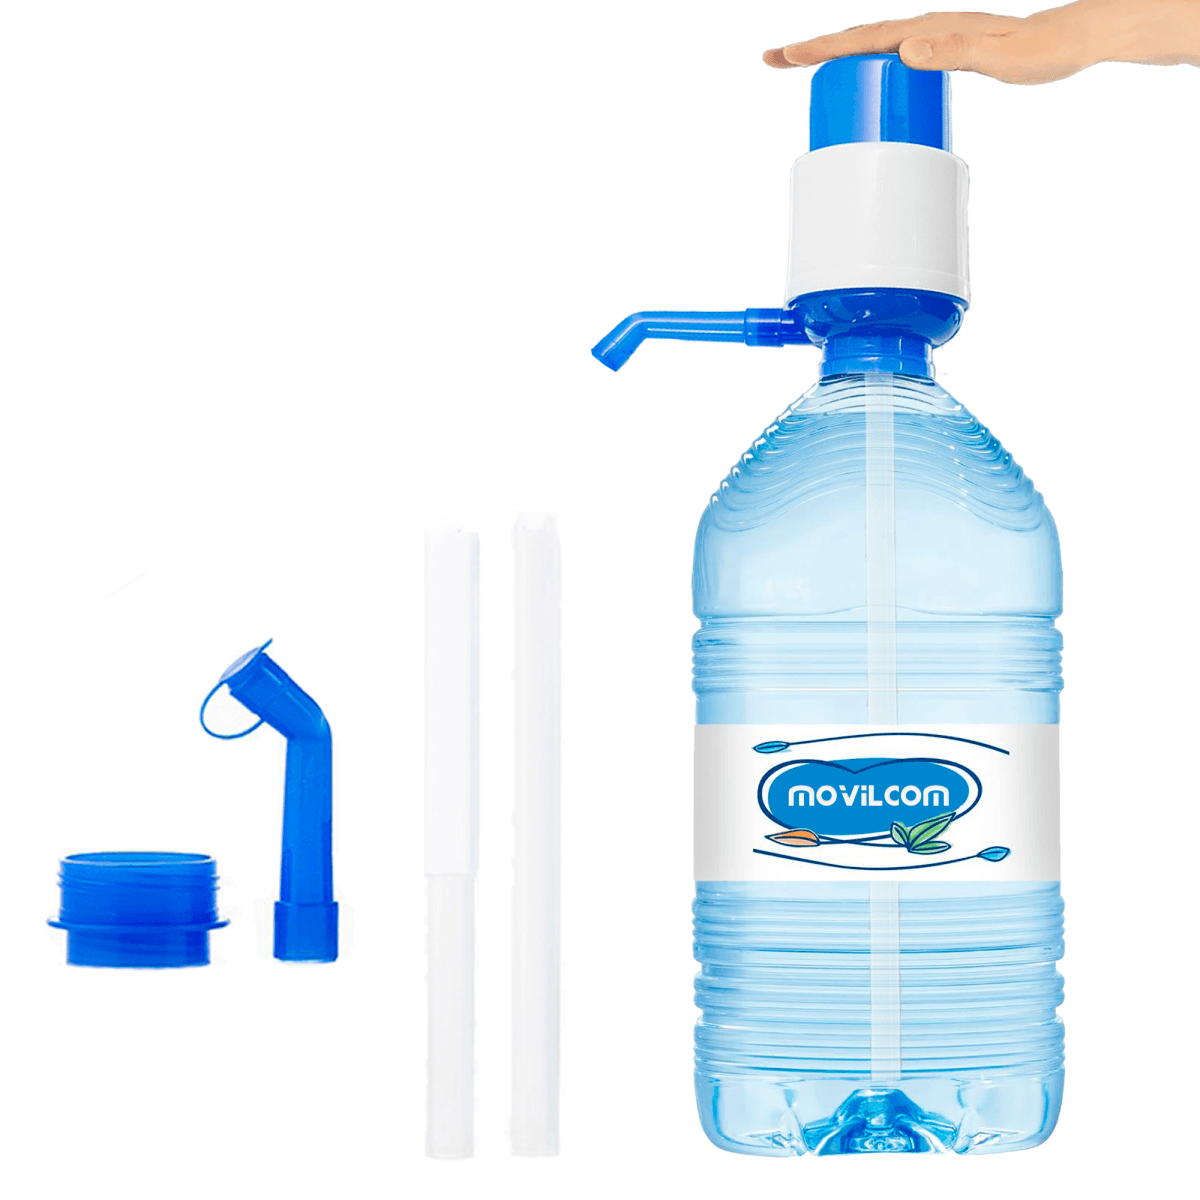 Dispensador de agua para garrafas. Bomba de agua - Ferreteria Armengol